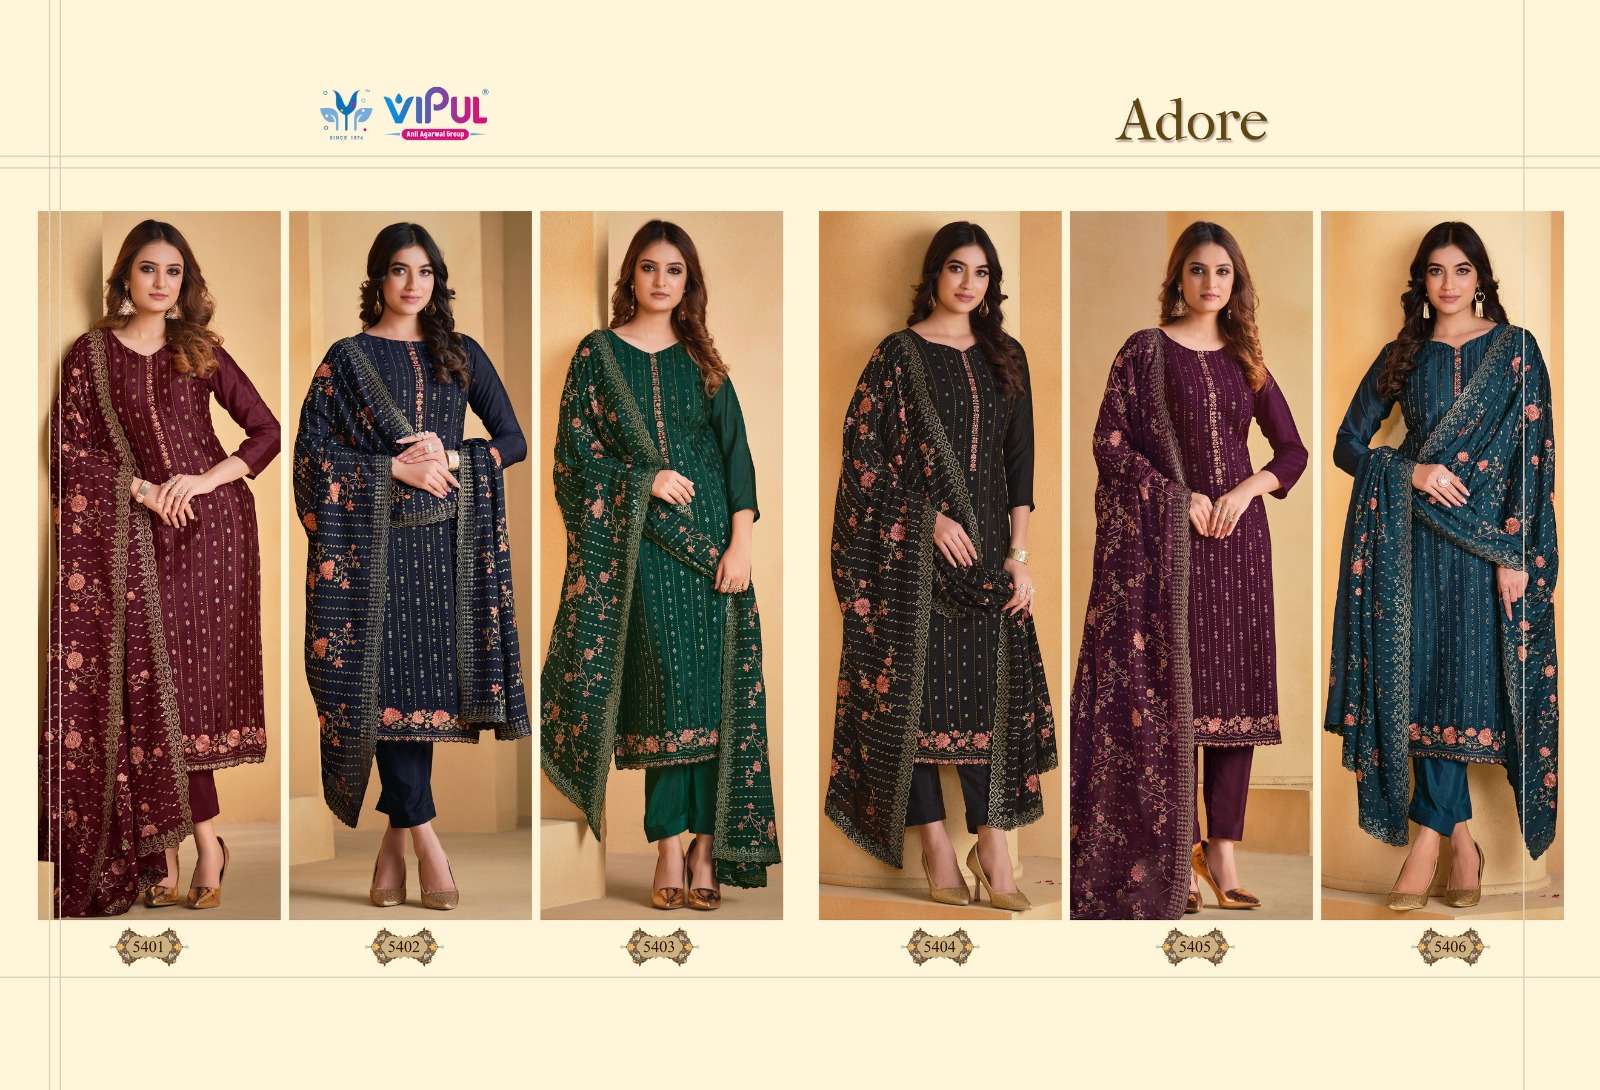 vipul fashion adore 5401-5406 series designer wedding salwar kameez wholesaler surat gujarat